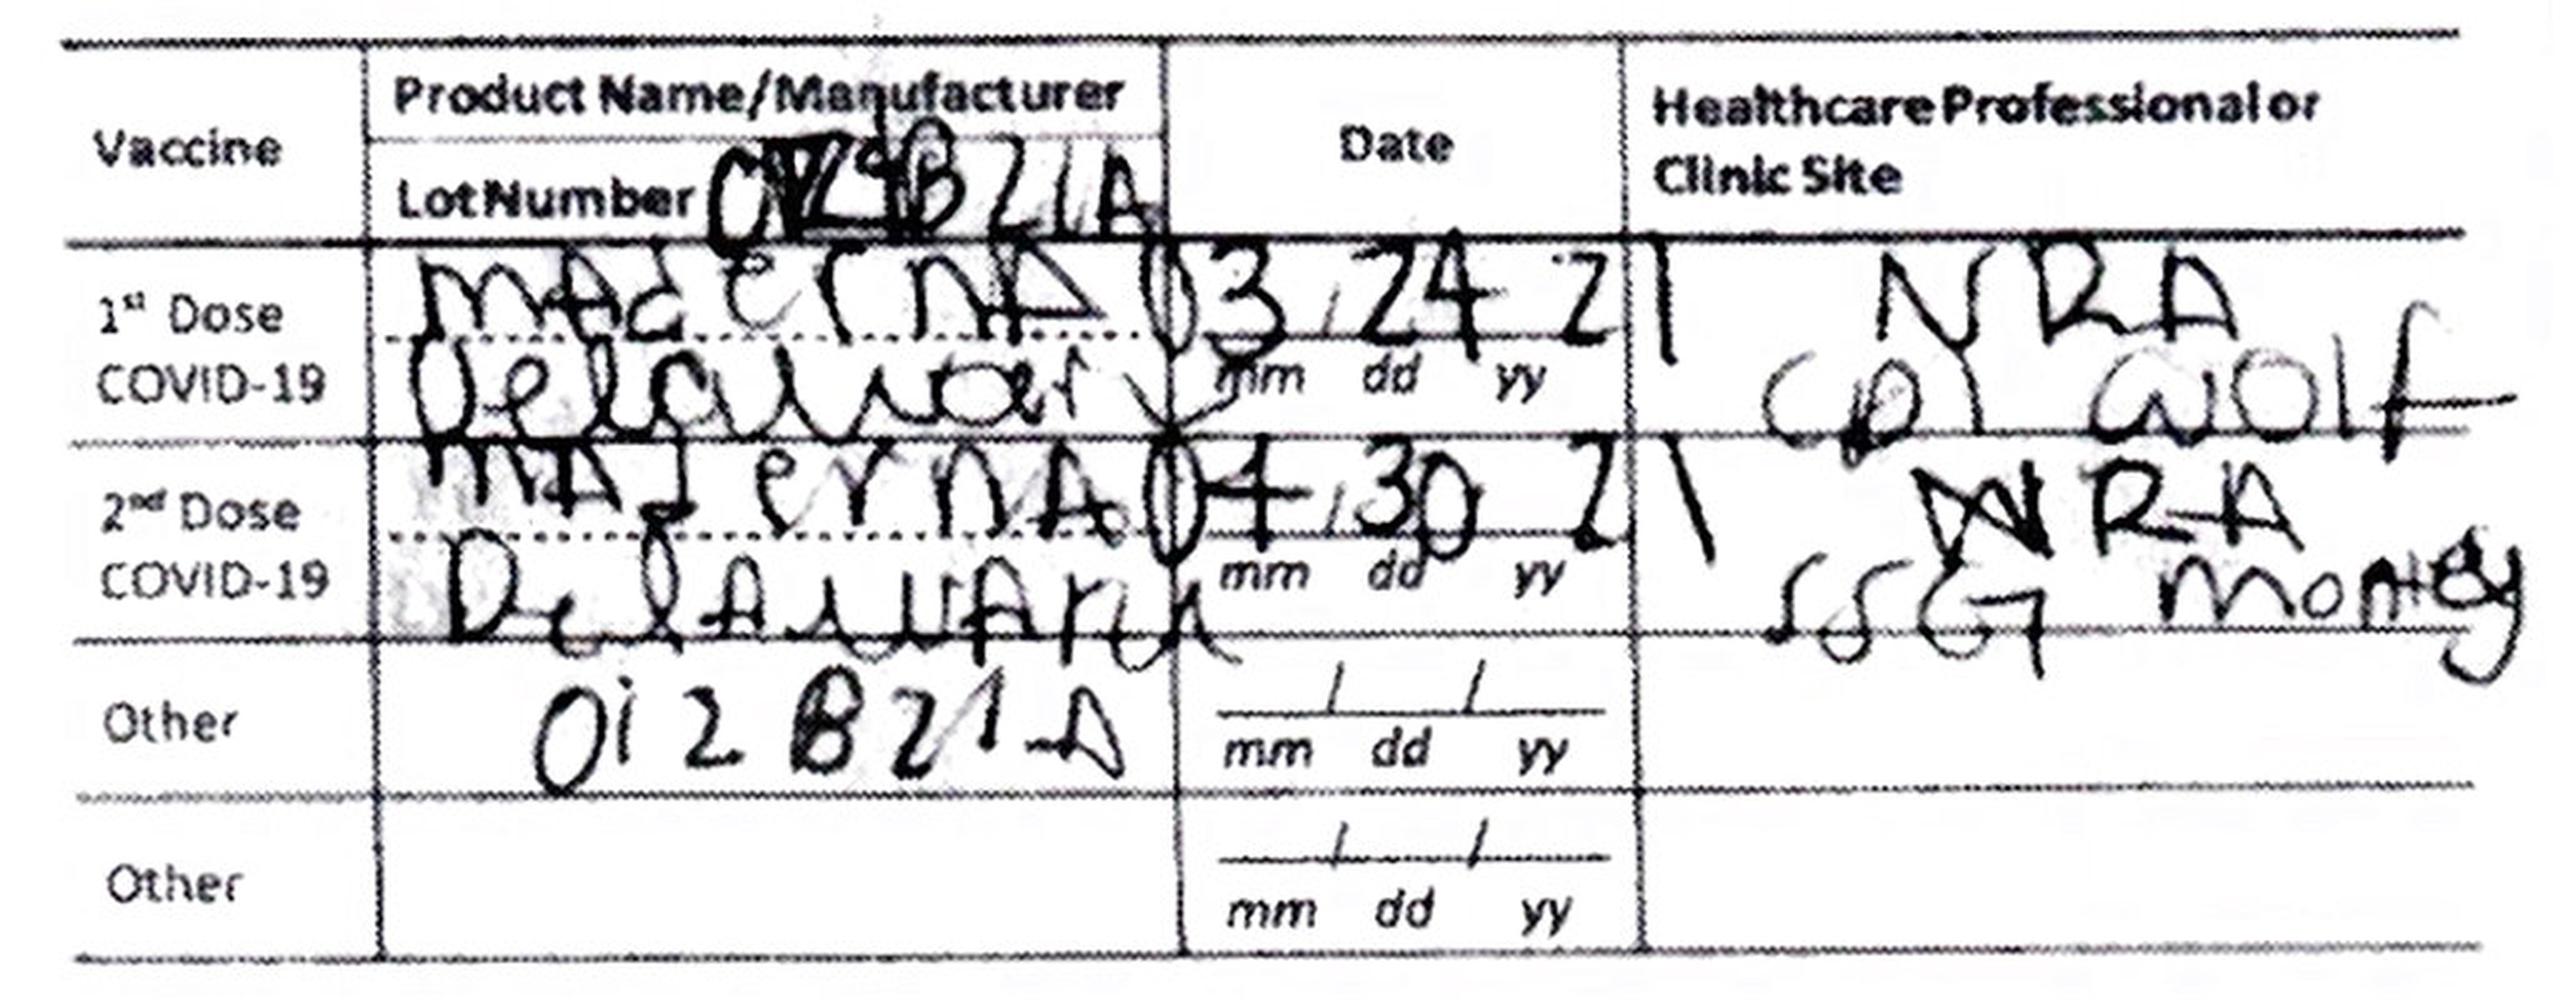 Este documento proporcionado por la fiscalía de Hawái muestra una tarjeta de vacunación contra COVID-19 falsa de una turista que viajó al estado.